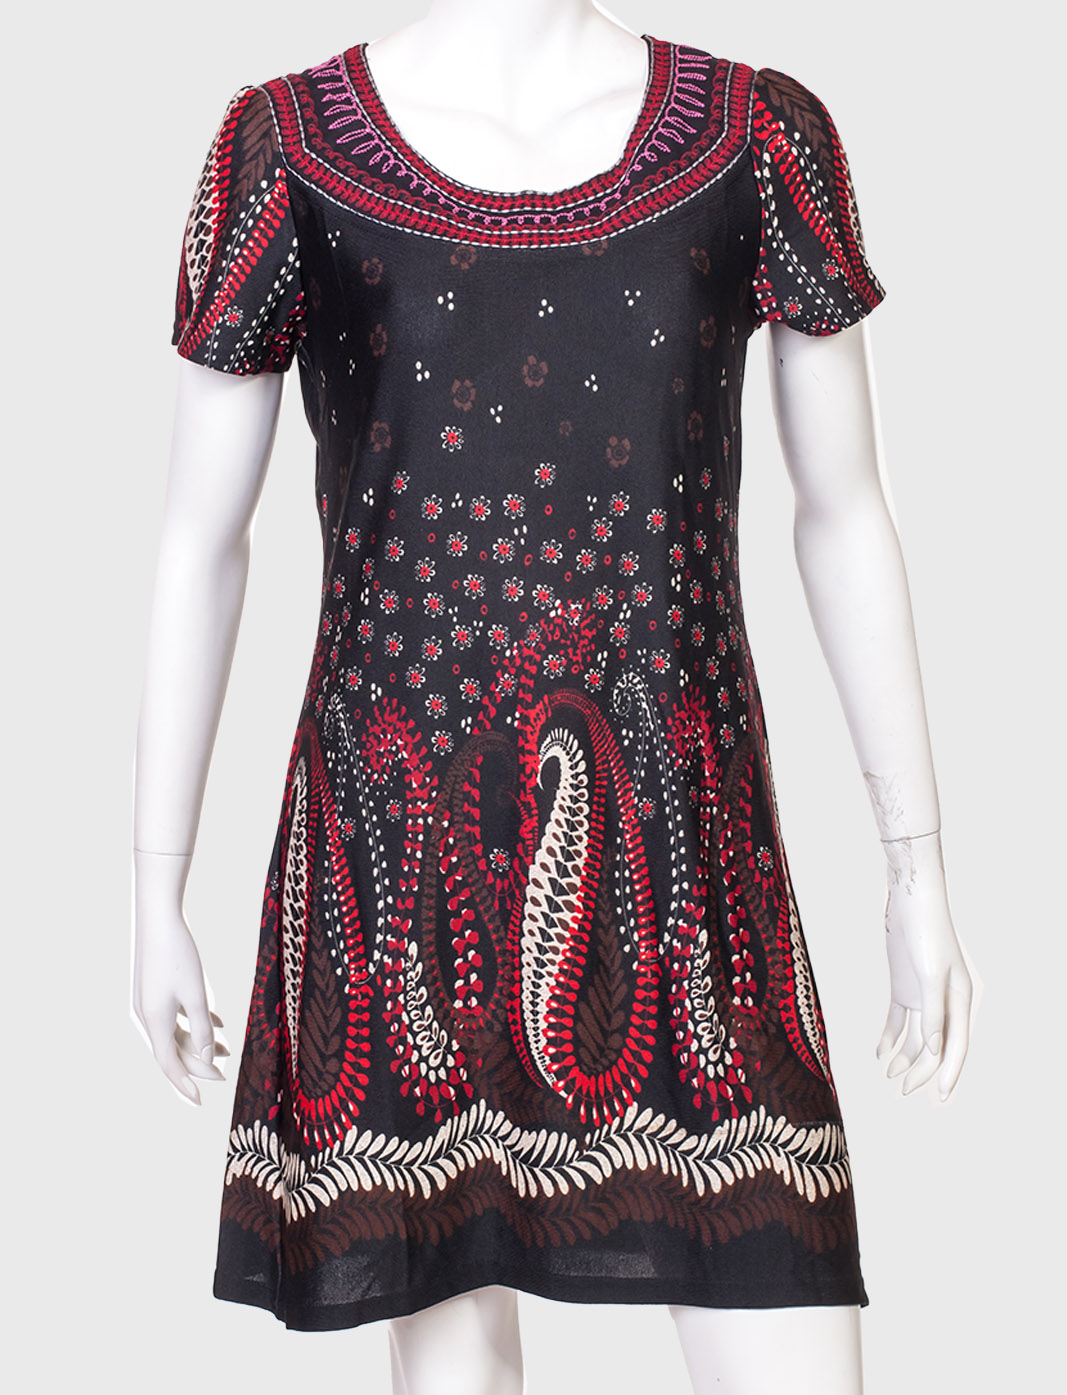 Крутое полуприлегающее платье от бренда Papillon по выгодной цене онлайн